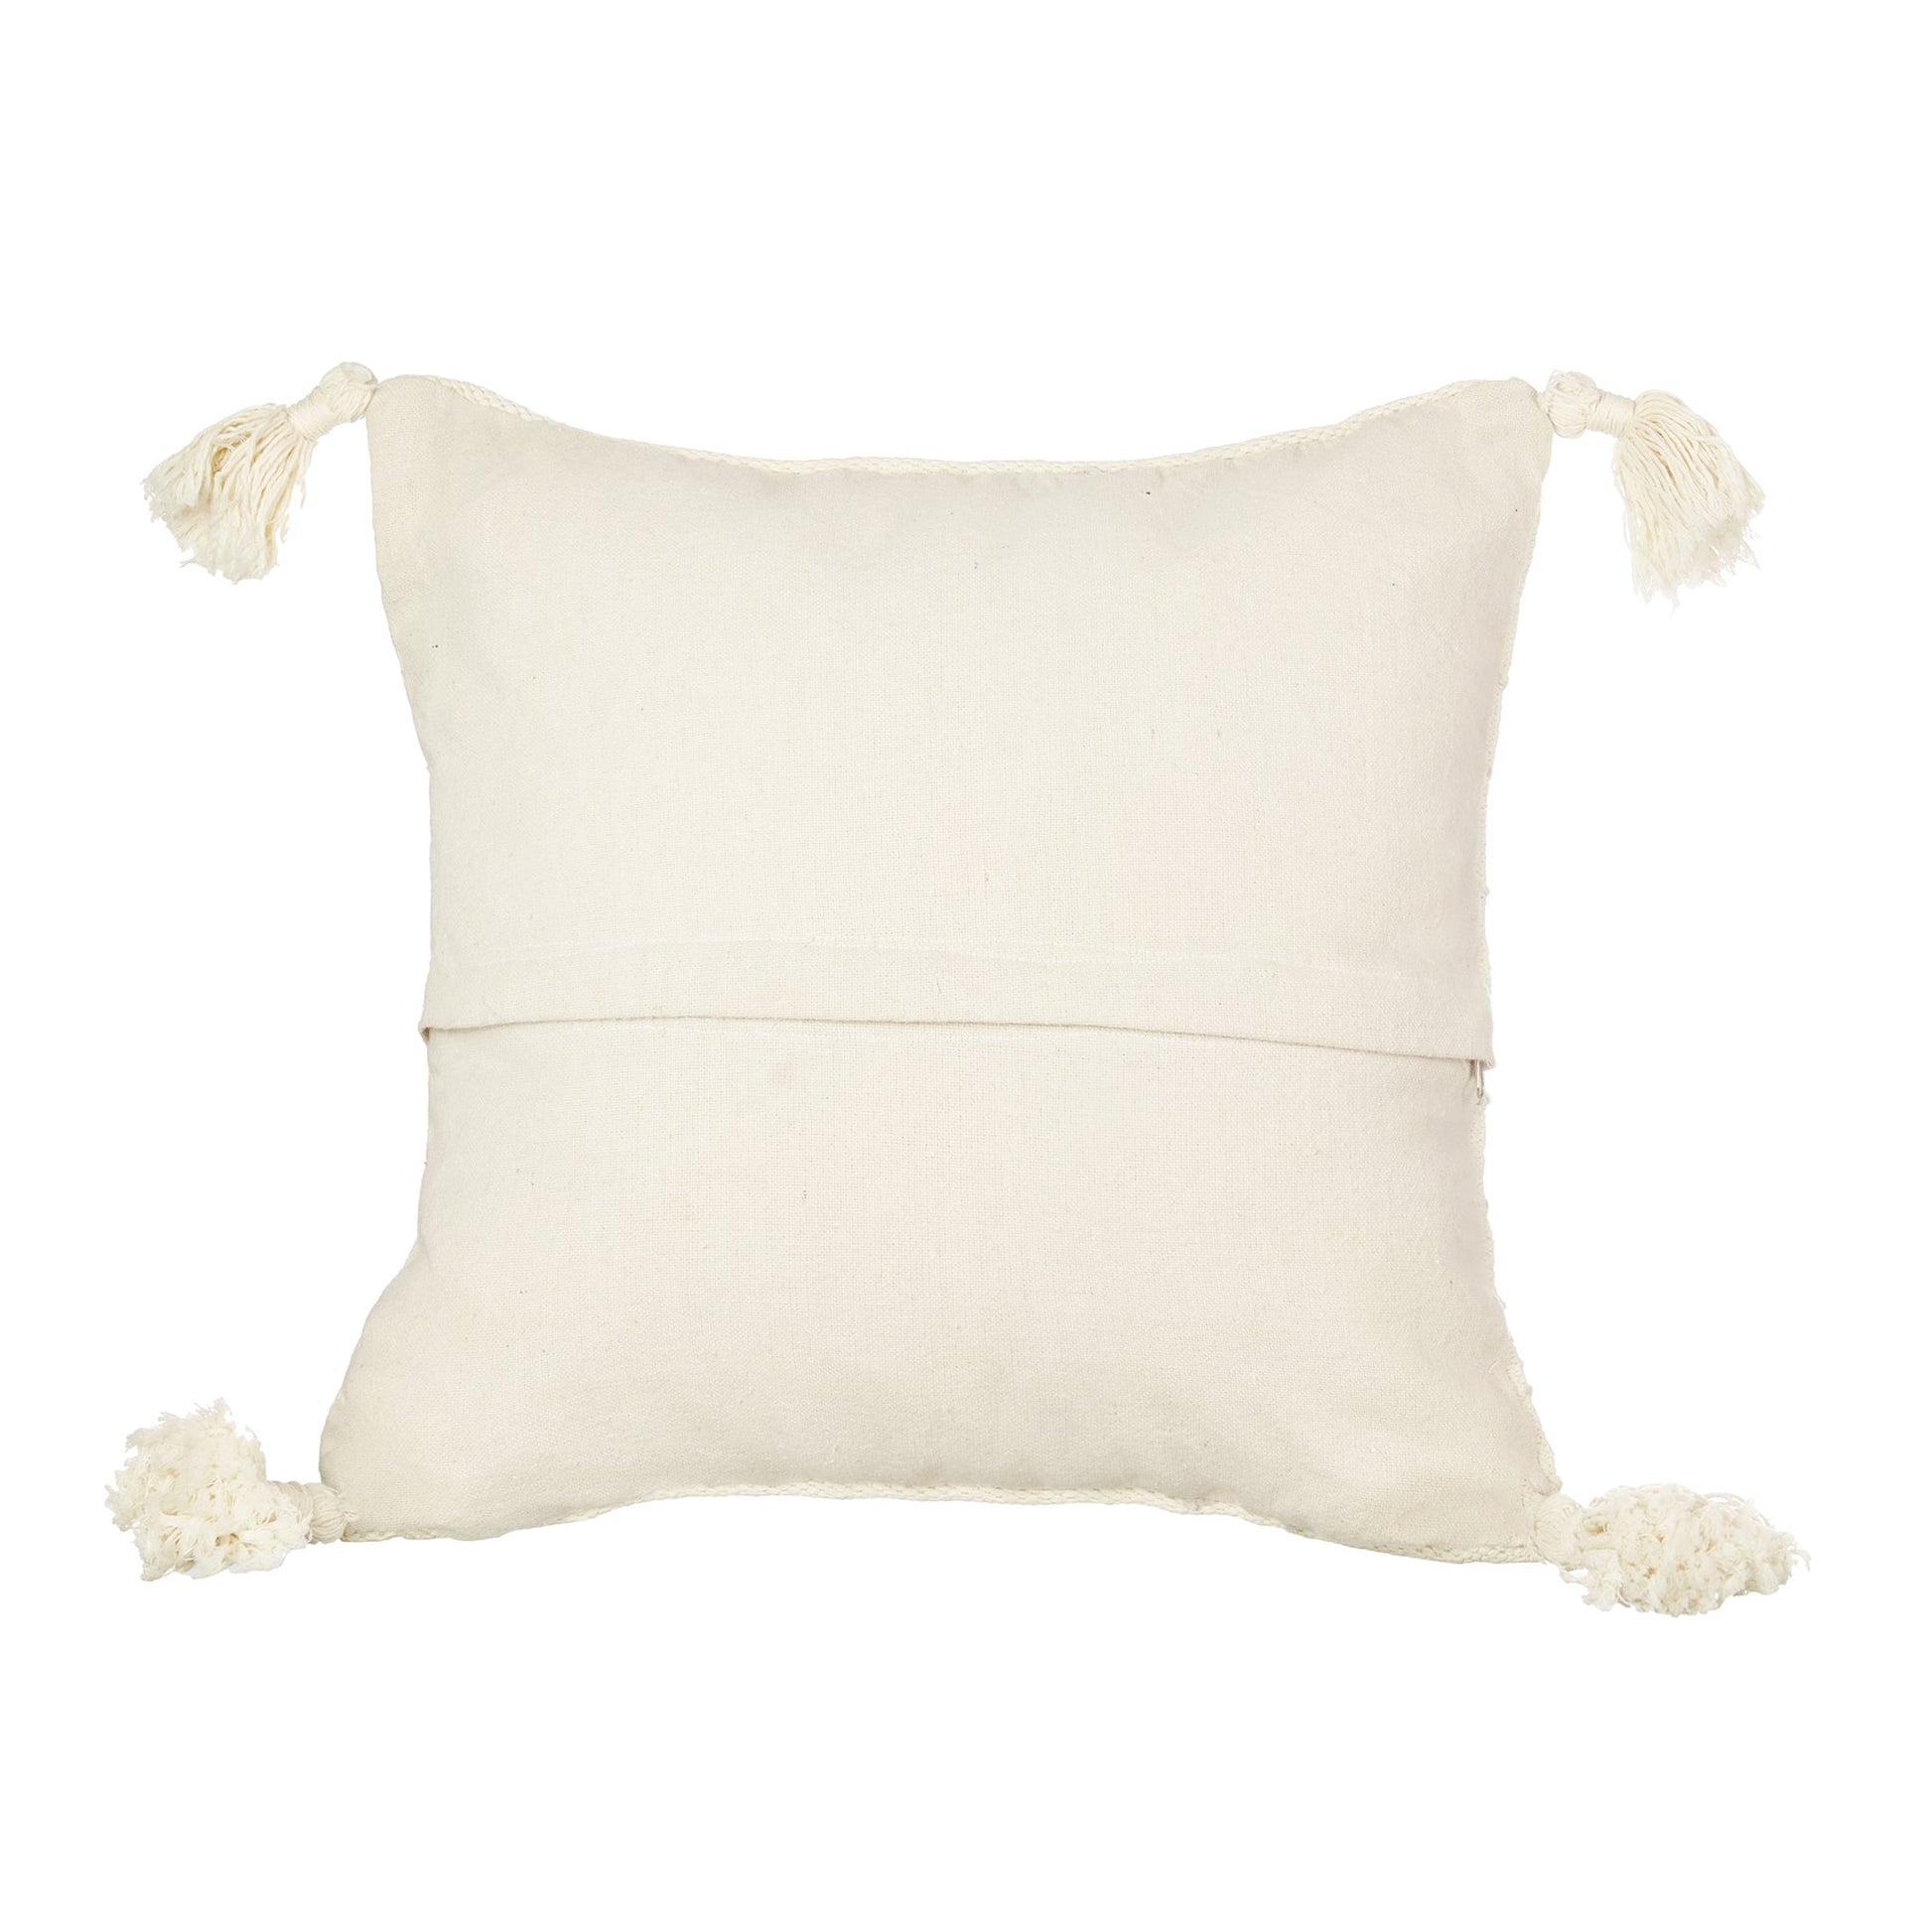 Flair cushion - Bohowoodland